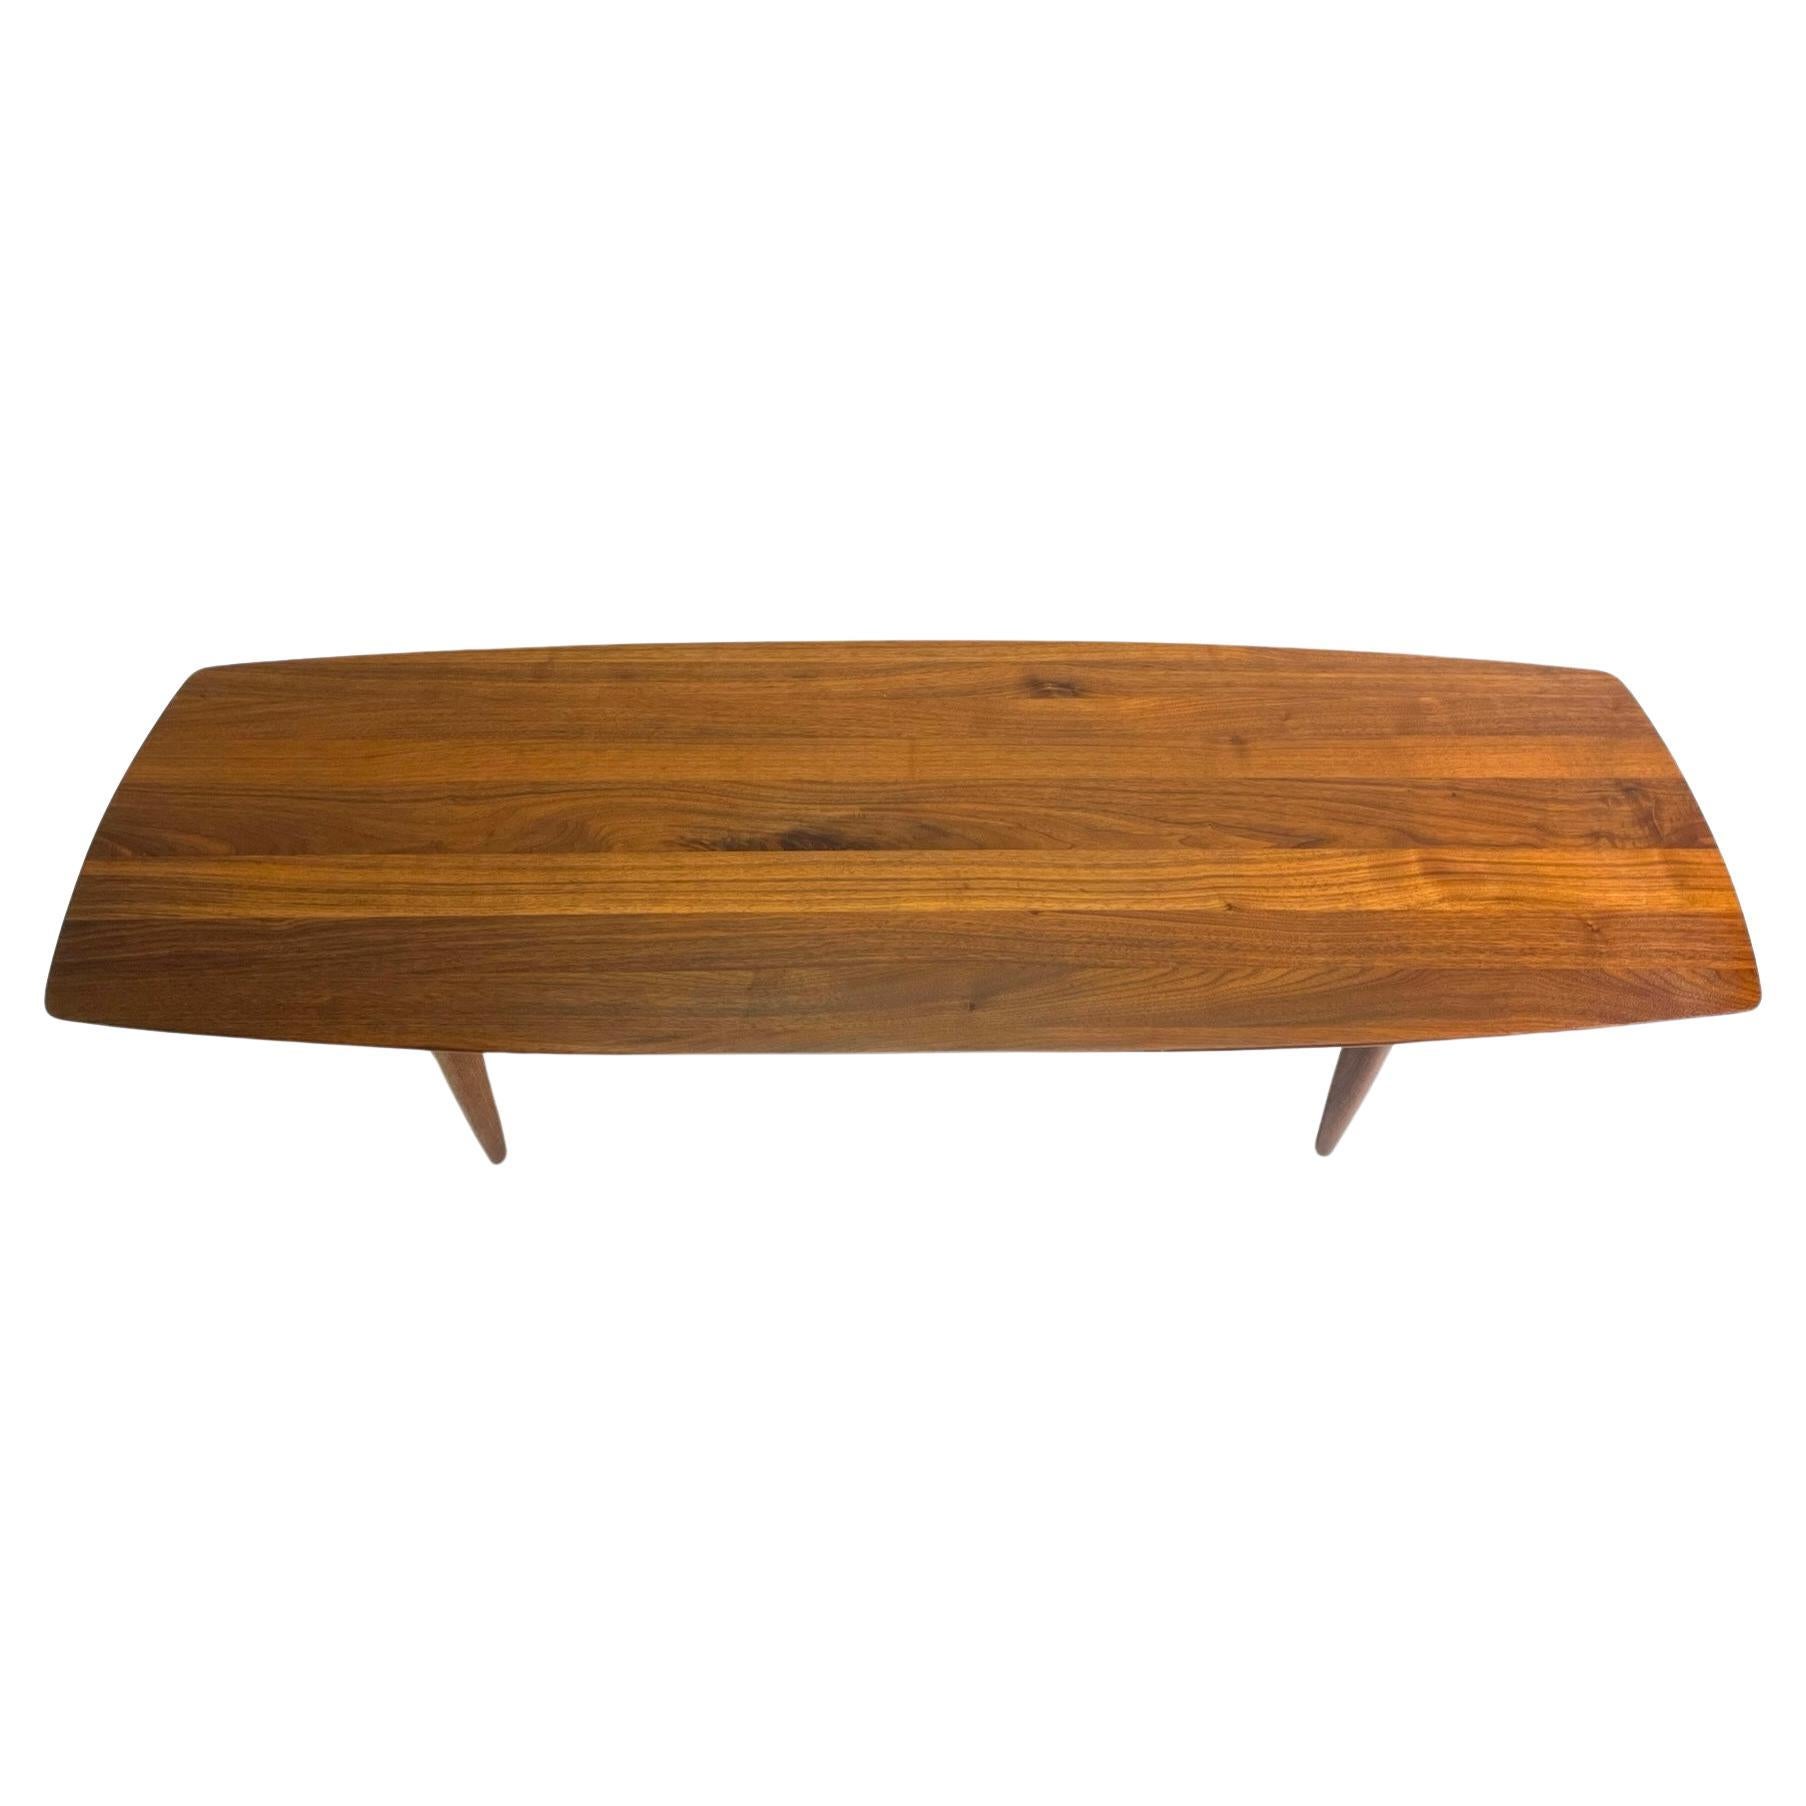 Table basse classique du milieu du siècle, fabriquée en Californie, par ACE-HI dans le cadre de la ligne Prelude. Cette table est une pure merveille de grain de bois, de forme élégante et de magie moderne du milieu du siècle ! 
Il y a très peu de